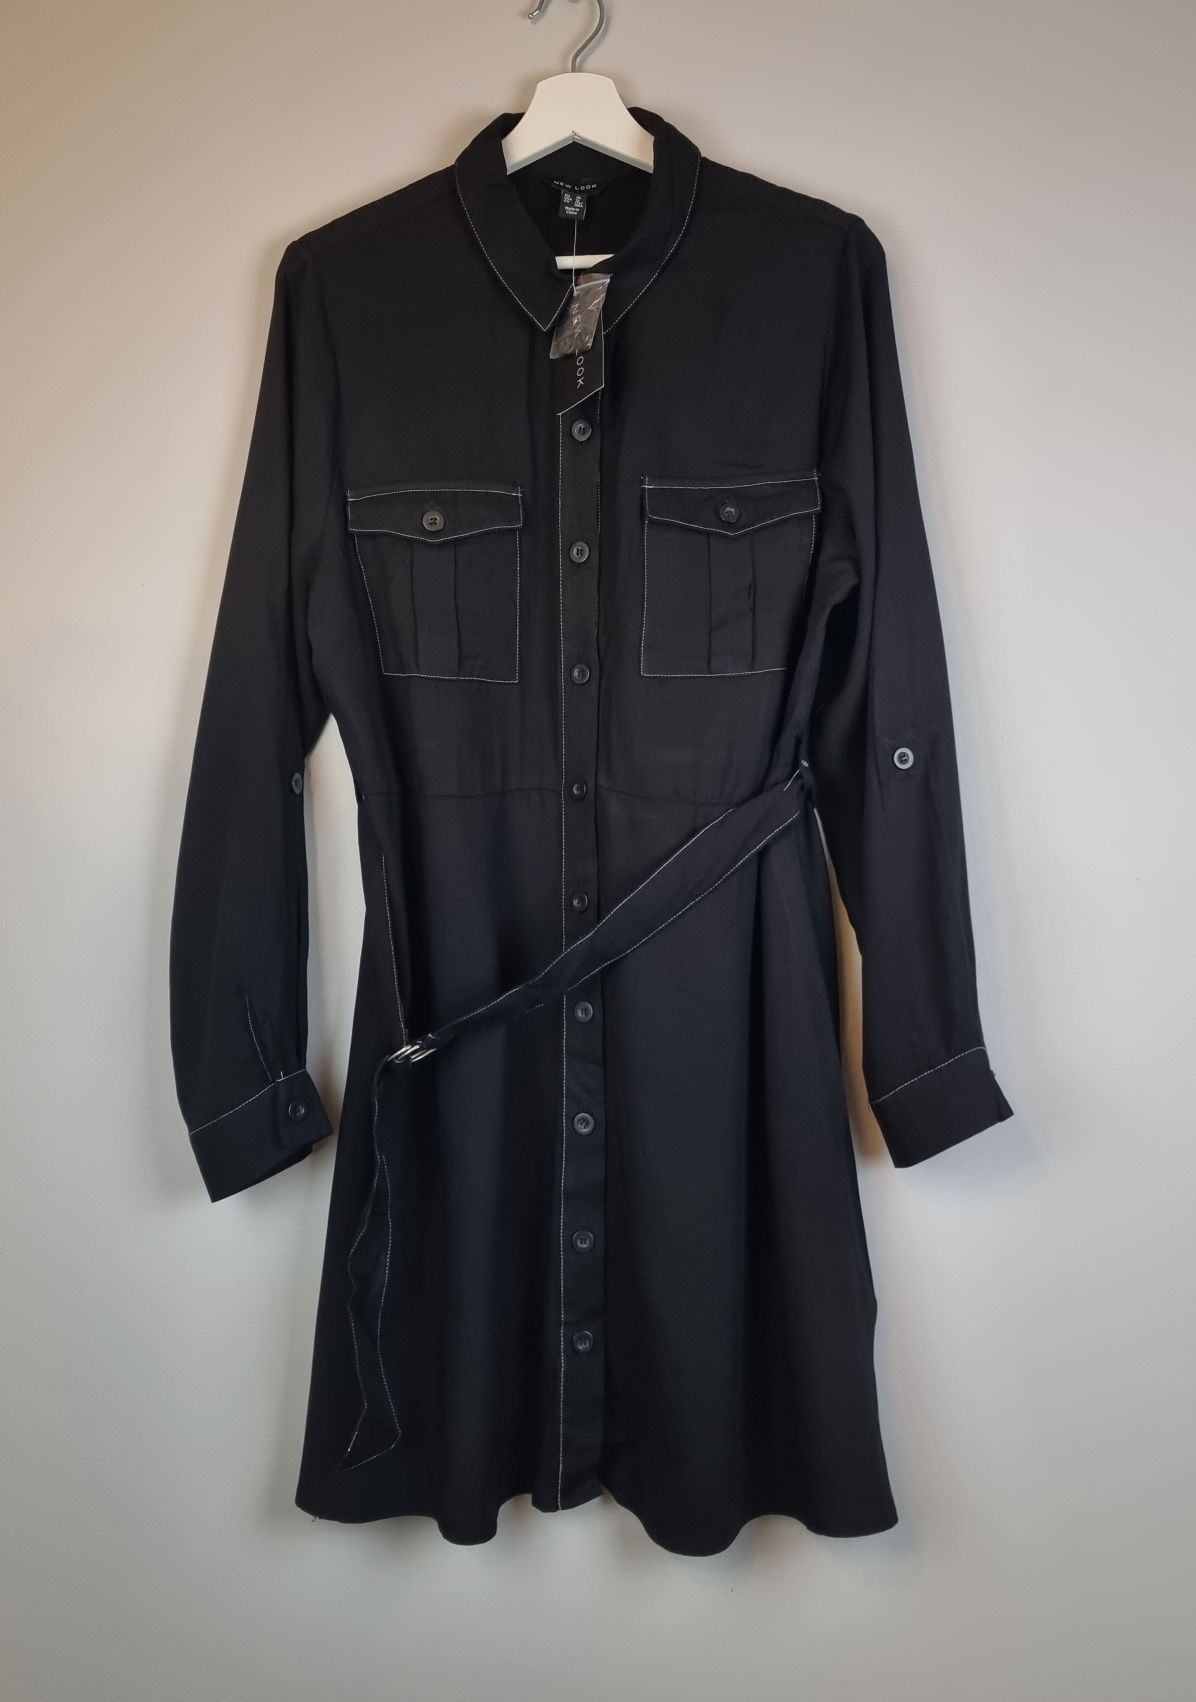 Sukienka koszulowa czarna szmizjerka rozmiar 44 nowa New Look